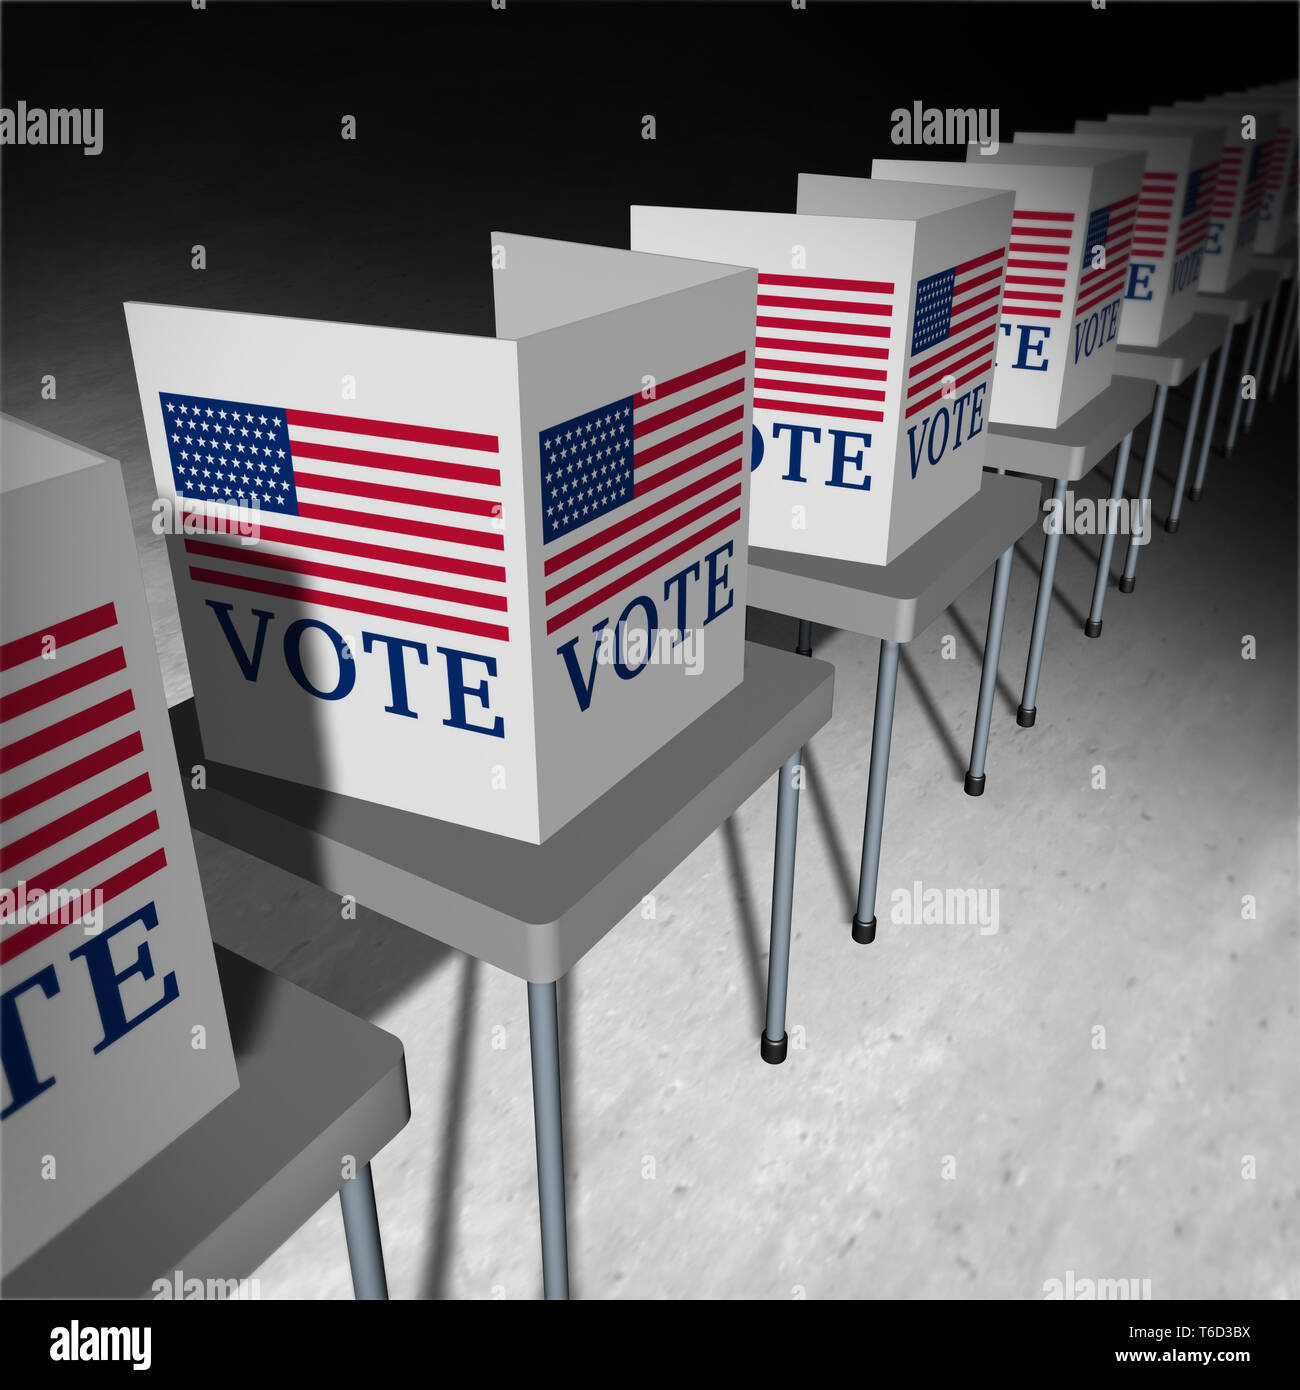 United States Abstimmung als Abstimmung Wahllokal mit Wähler Ständen für einen amerikanischen Präsidenten oder der Regierung Wahl zum Senat oder Kongress als Symbol. Stockfoto